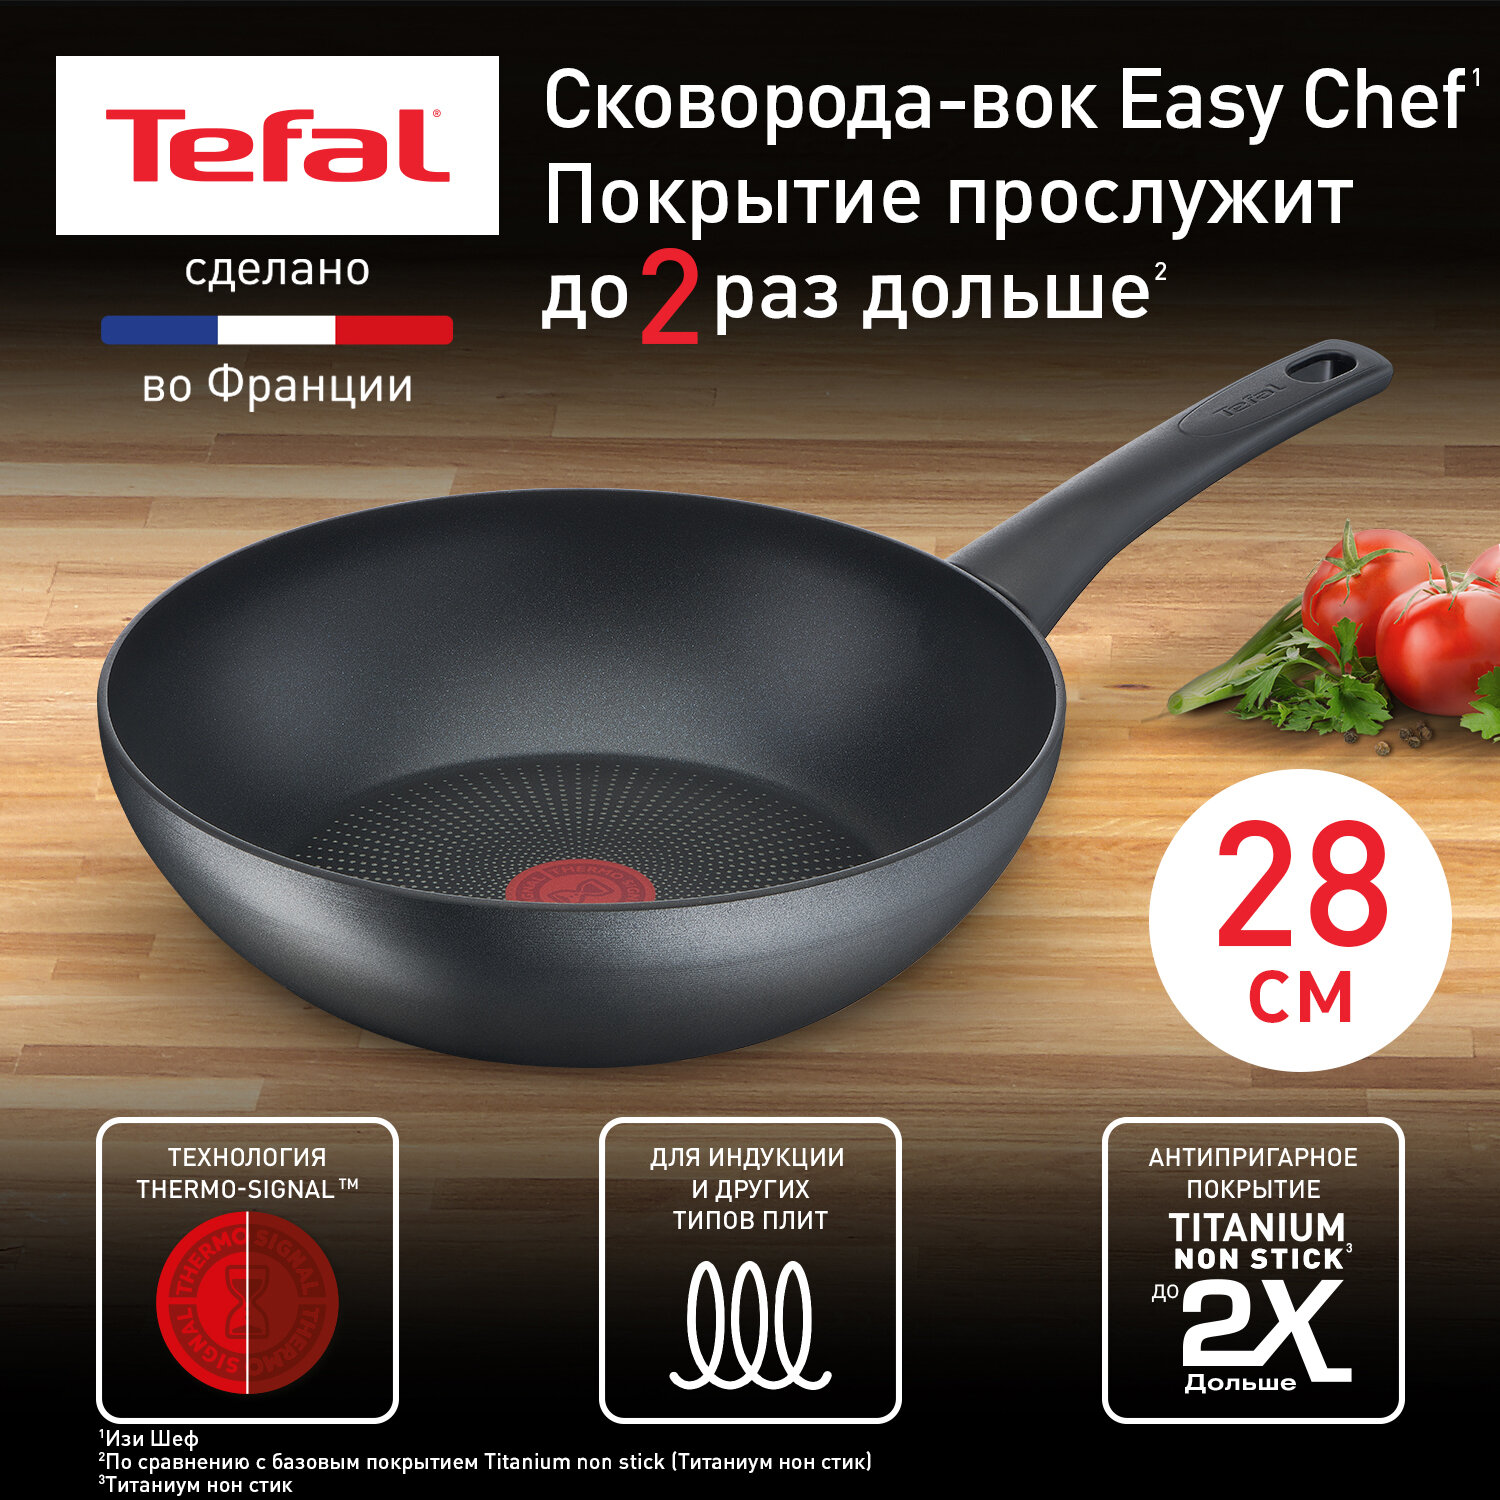 Сковорода вок Tefal Easy Chef G2701972, диаметр 28 см, с индикатором температуры, с антипригарным покрытием, для газовых, электрических и индукционных плит, сделано во Франции